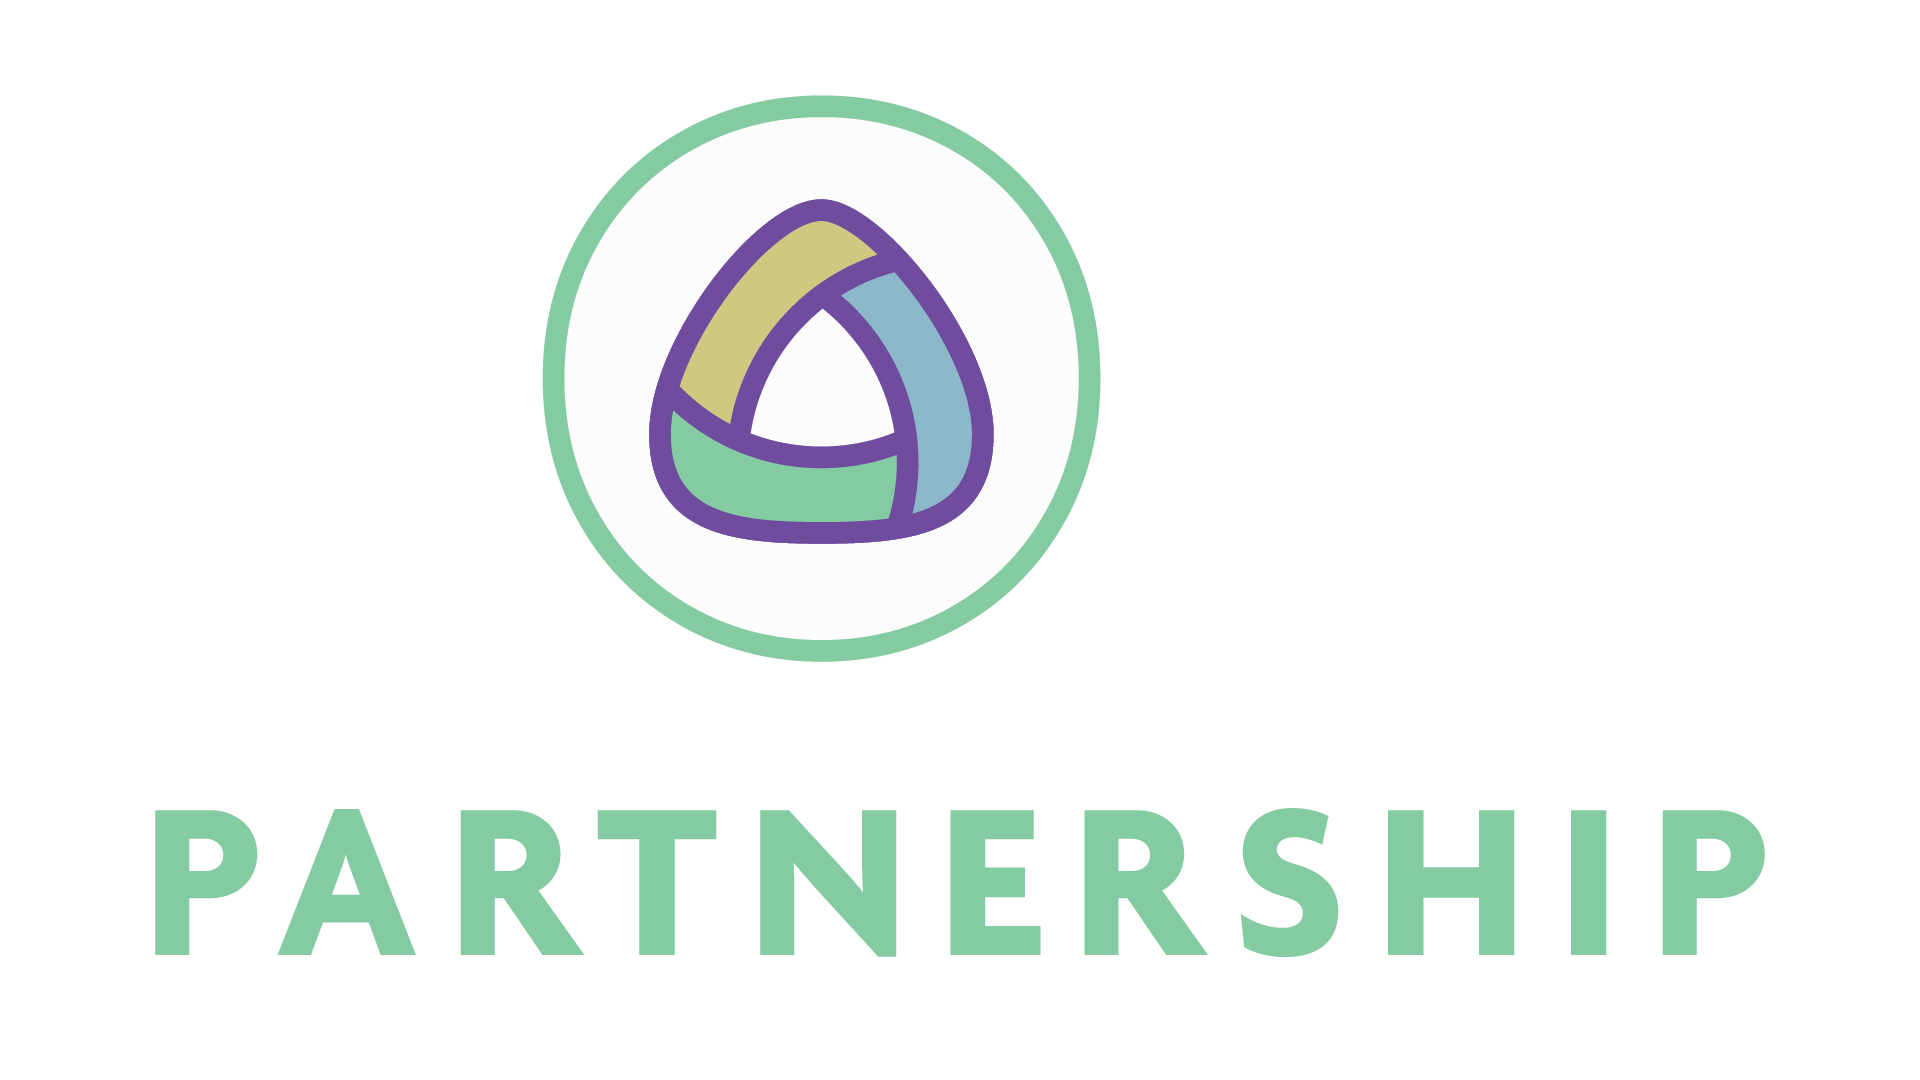 Hope Partnership